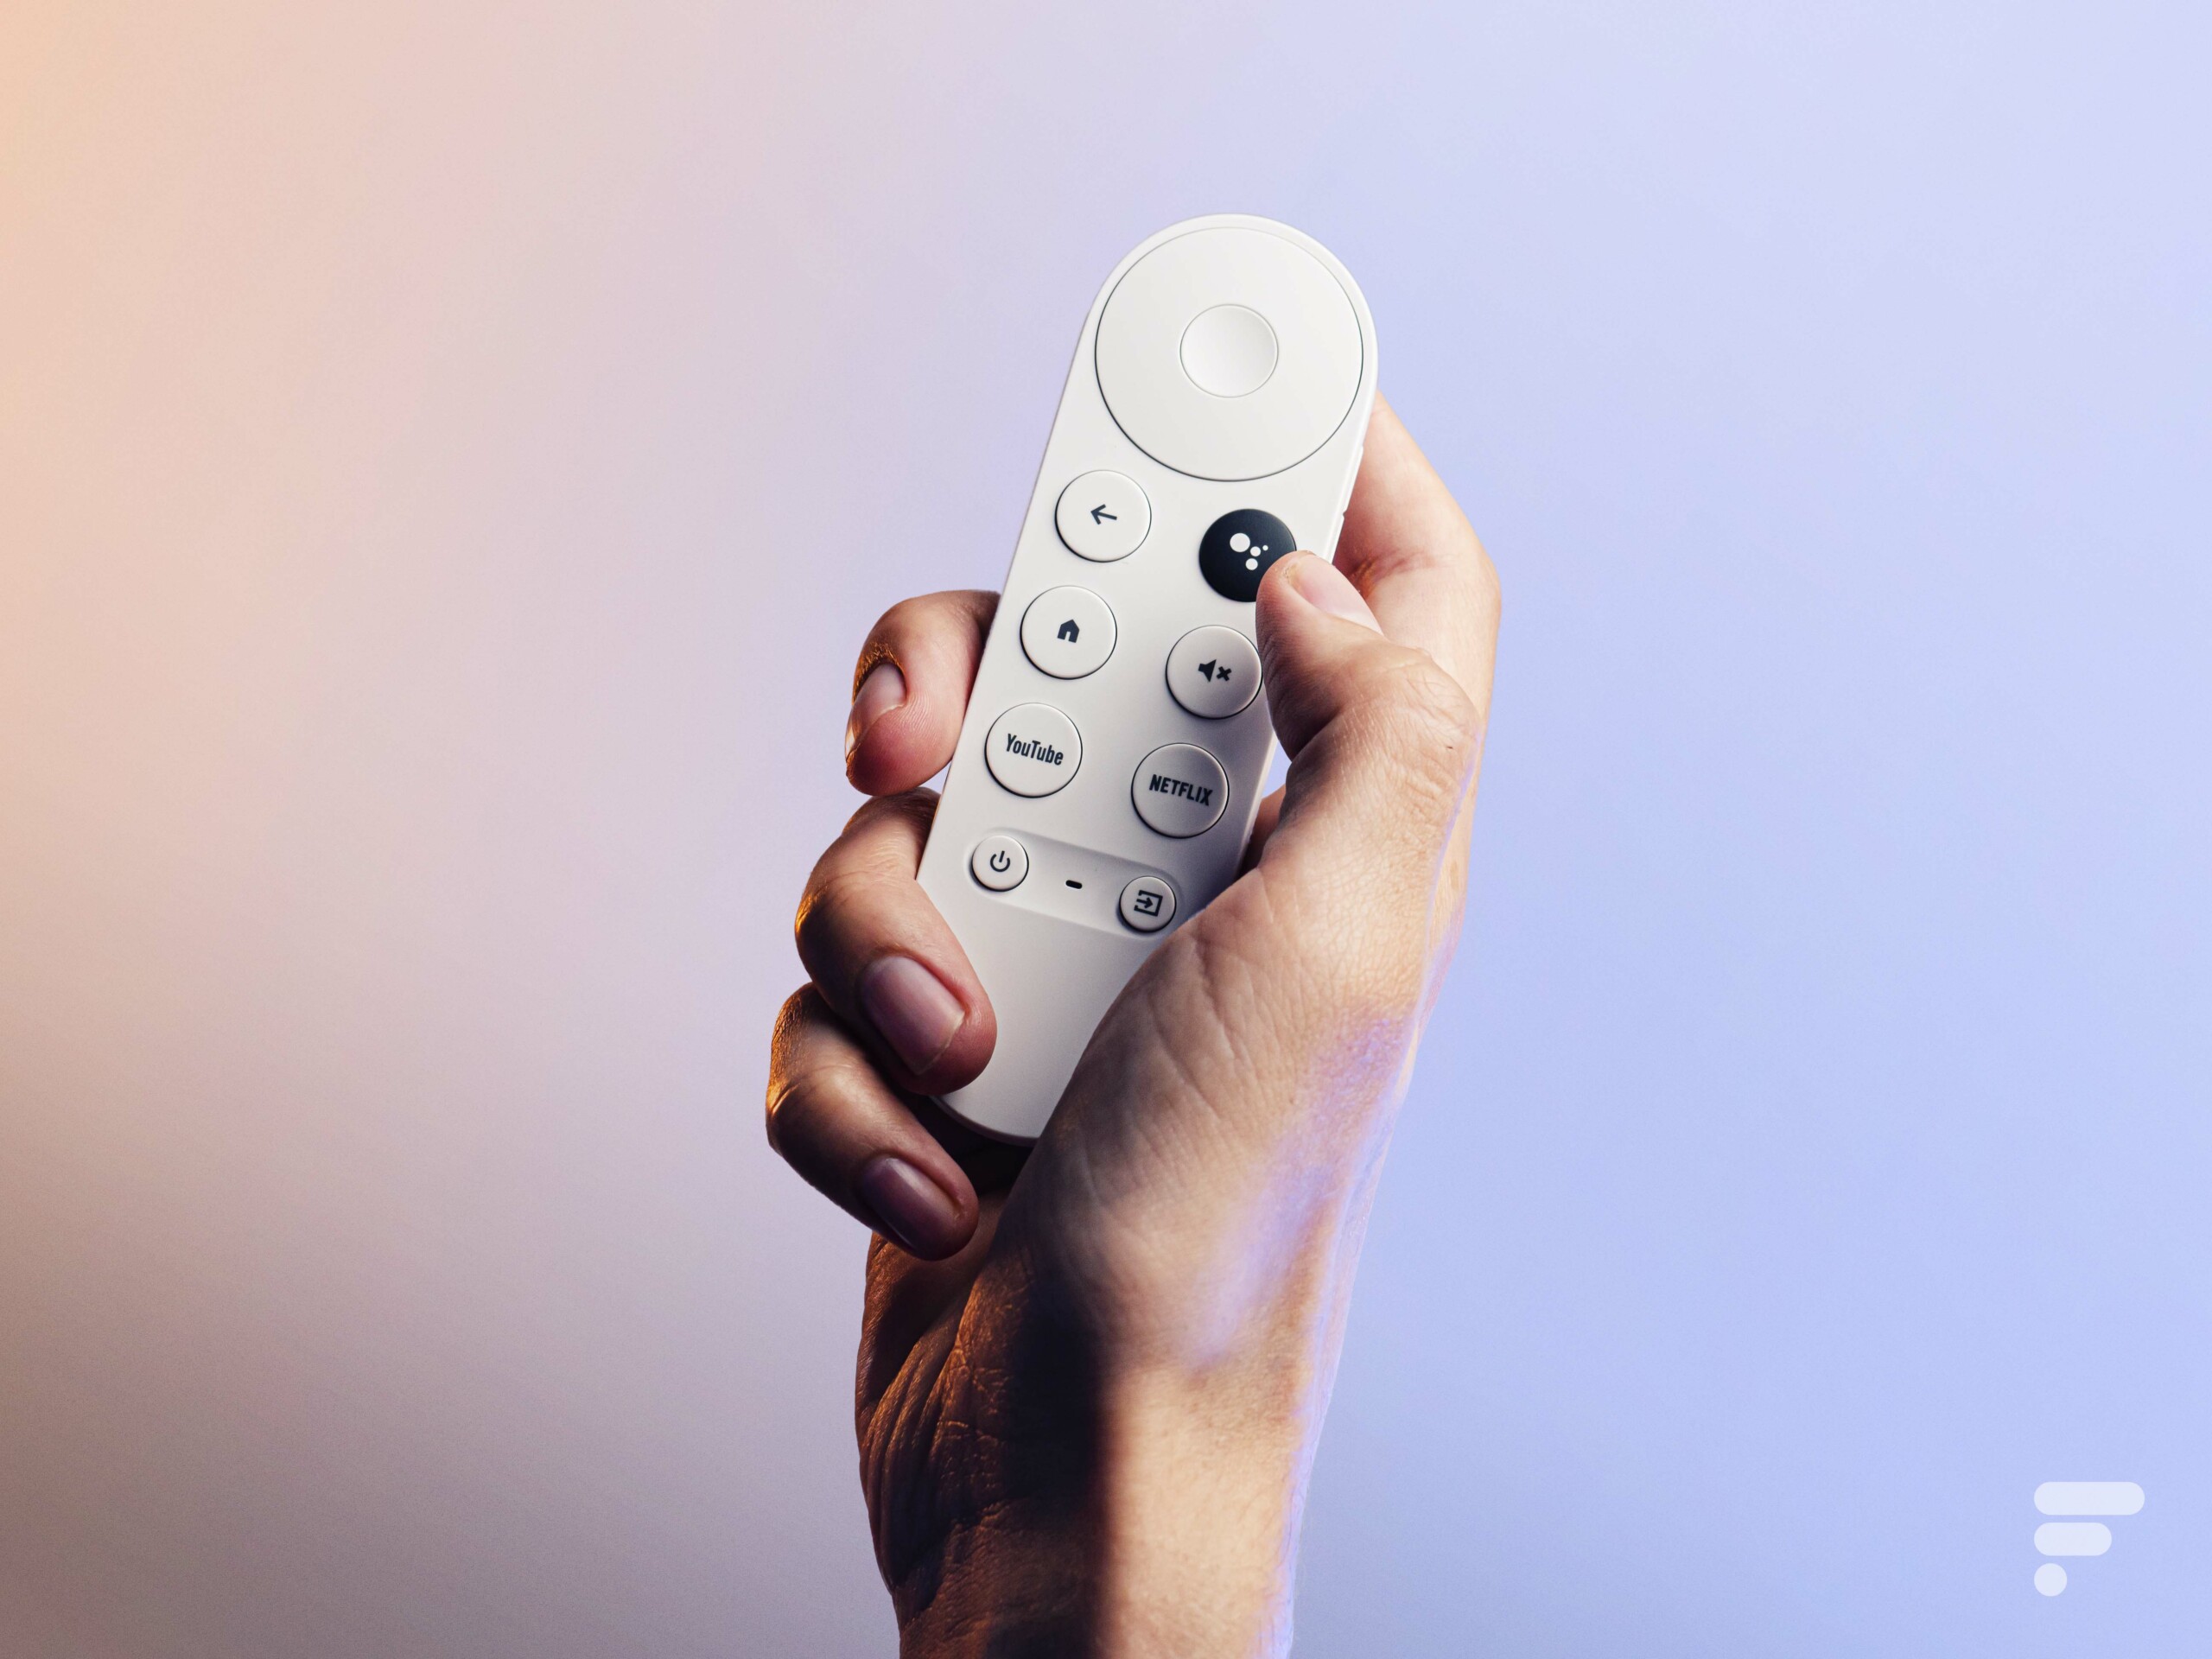 Chromecast avec Google Tv la meilleure clé pour une télé connectée